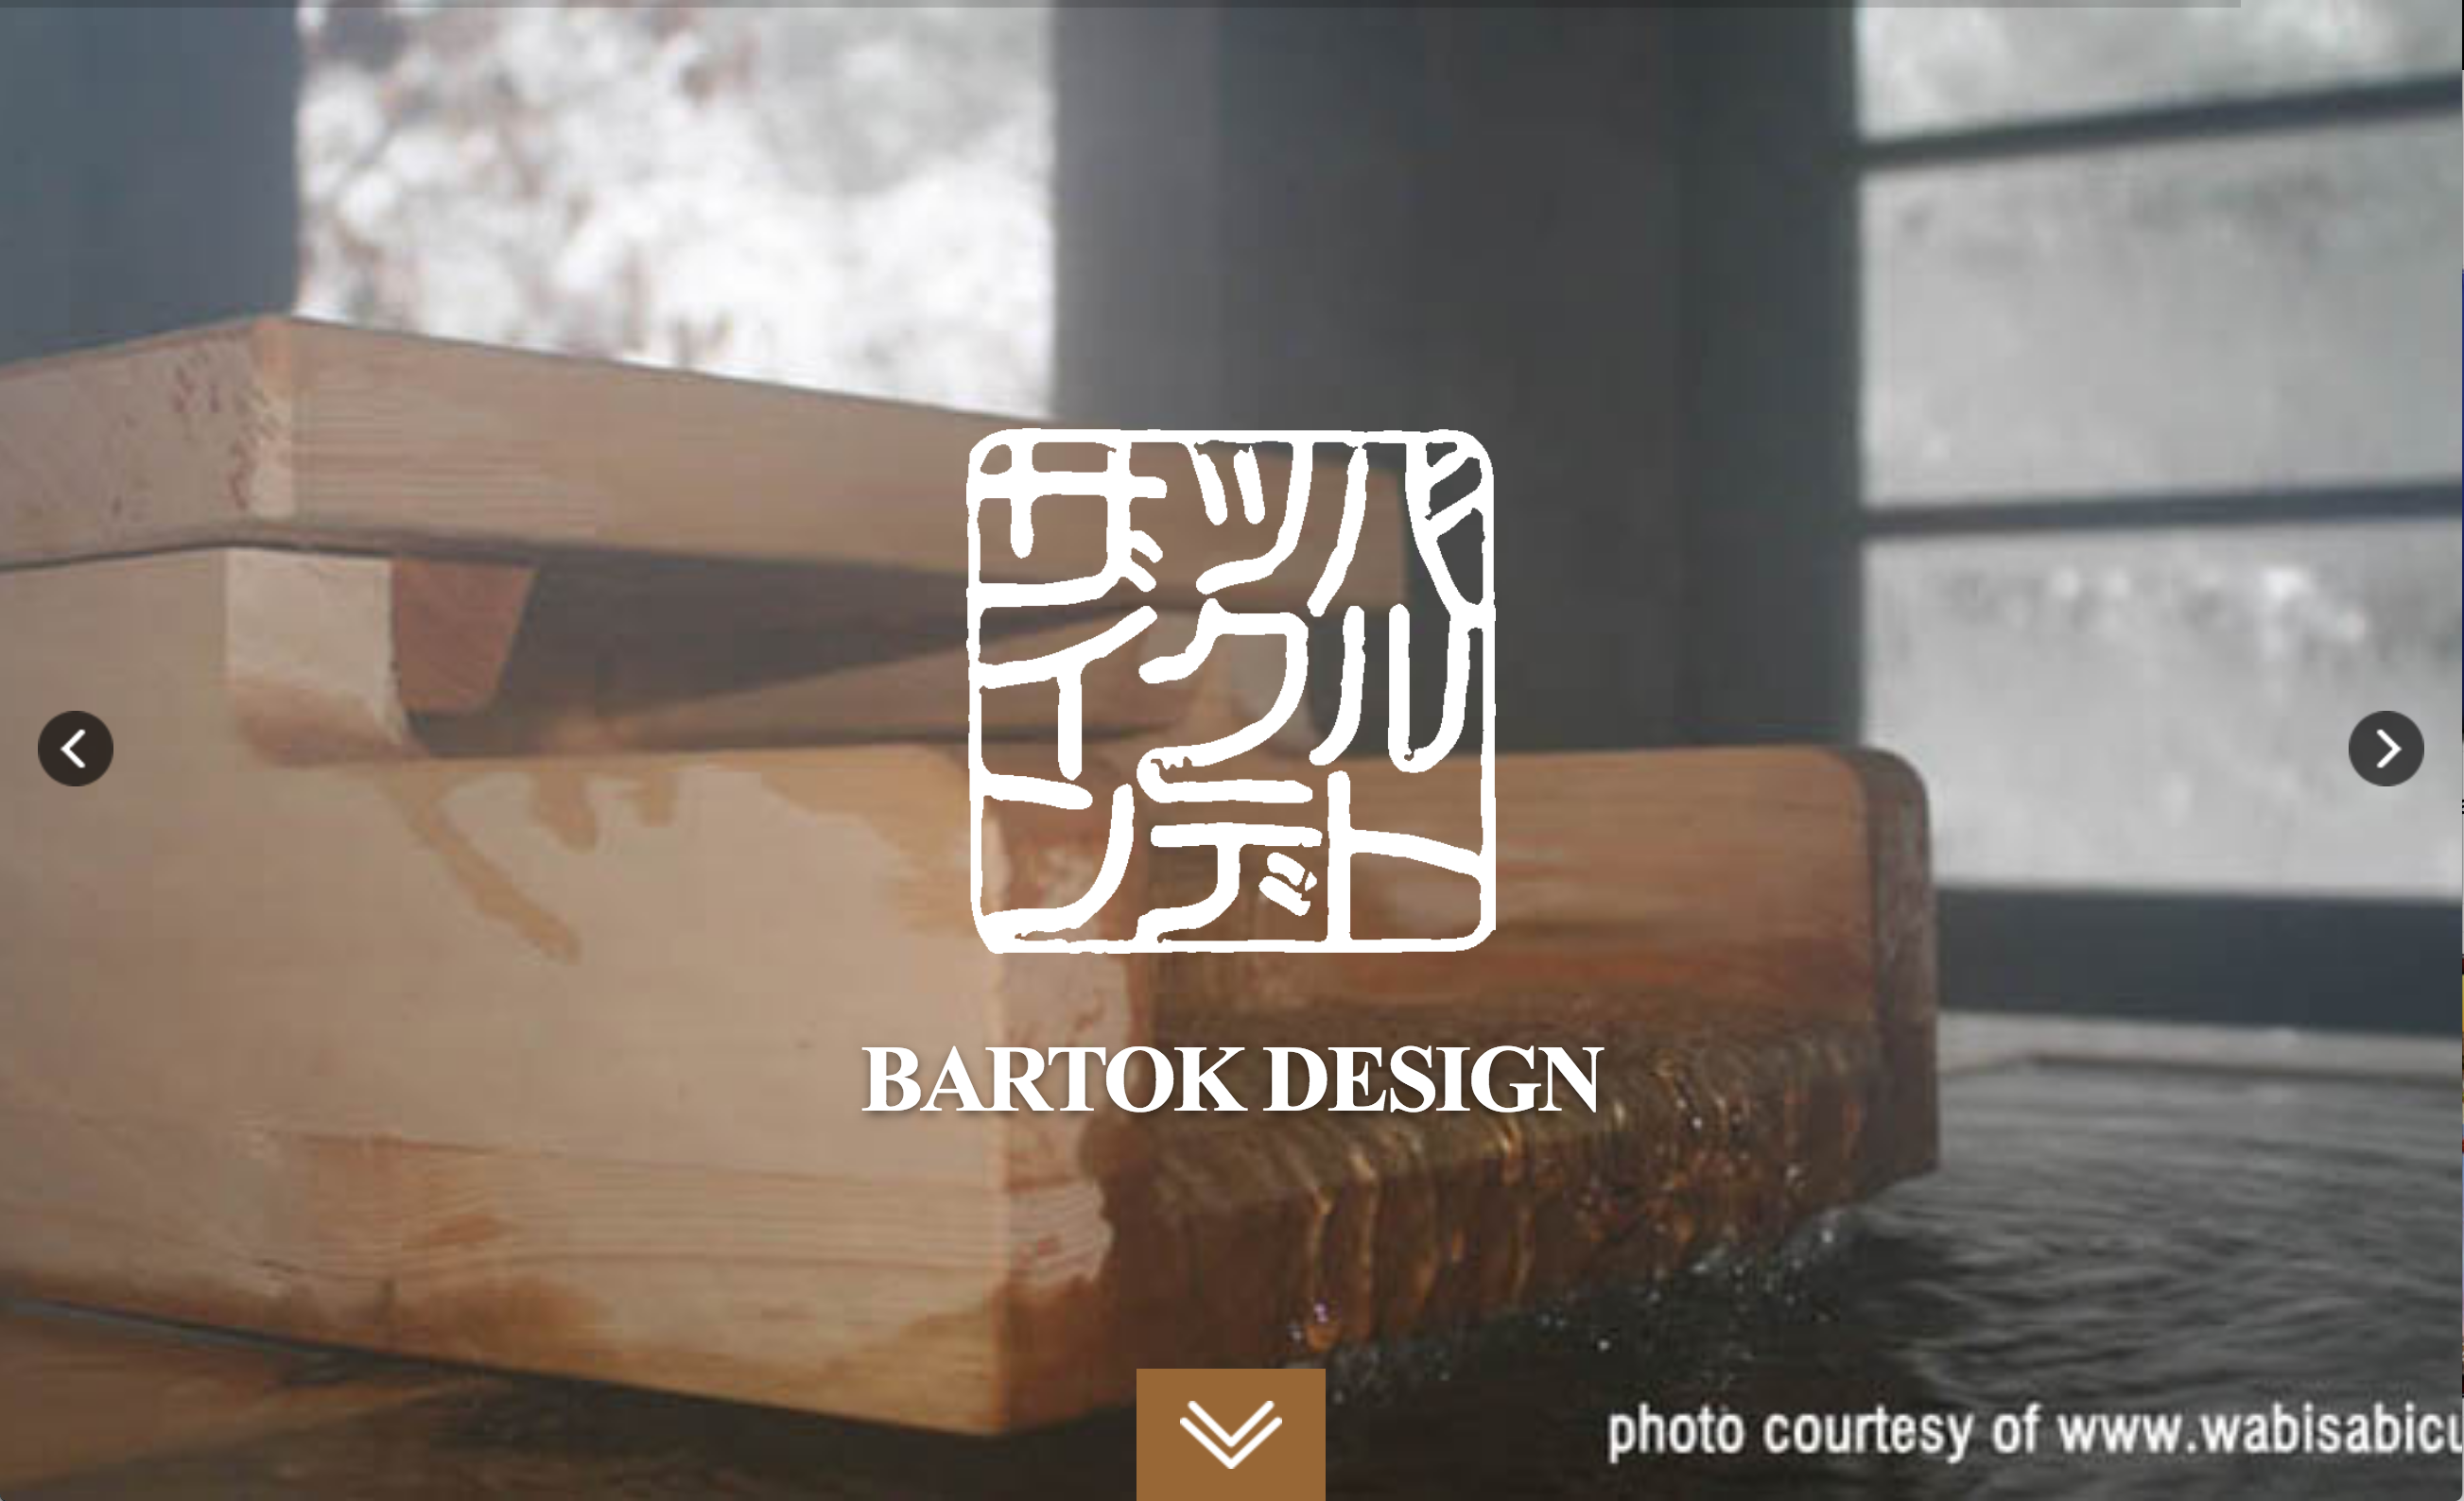 Bartok Design Co.